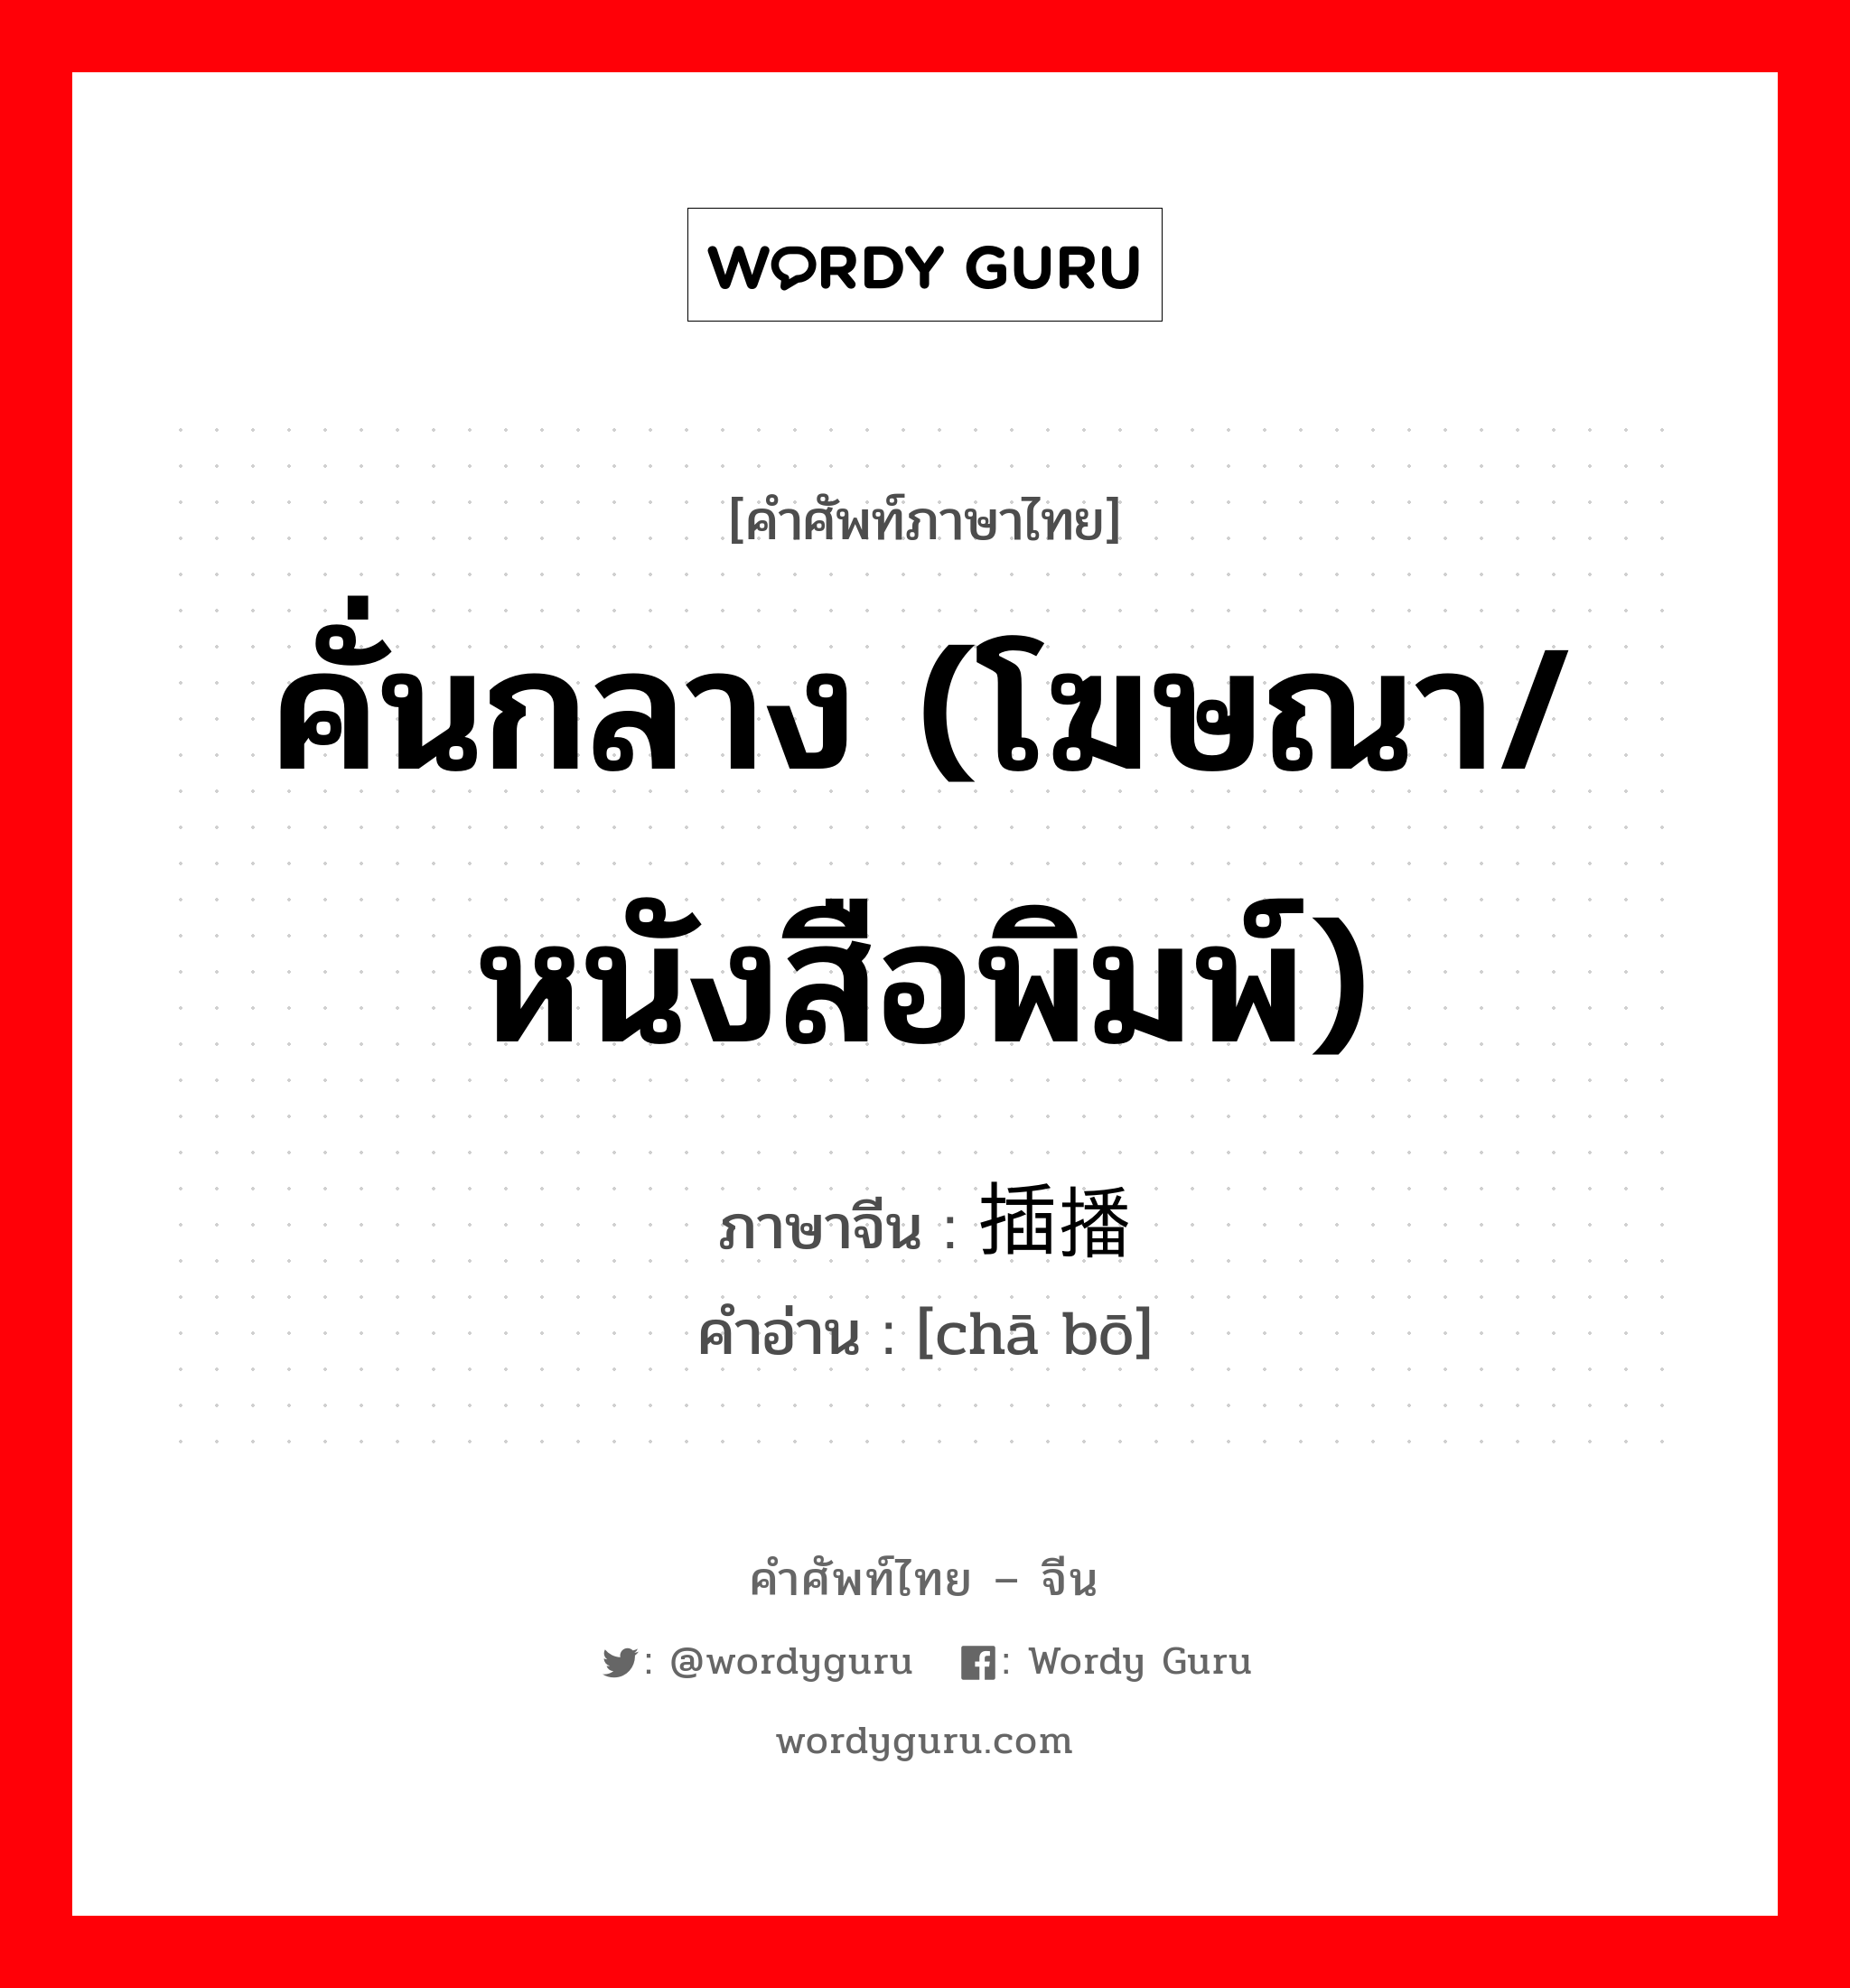 คั่นกลาง (โฆษณา/หนังสือพิมพ์) ภาษาจีนคืออะไร, คำศัพท์ภาษาไทย - จีน คั่นกลาง (โฆษณา/หนังสือพิมพ์) ภาษาจีน 插播 คำอ่าน [chā bō]